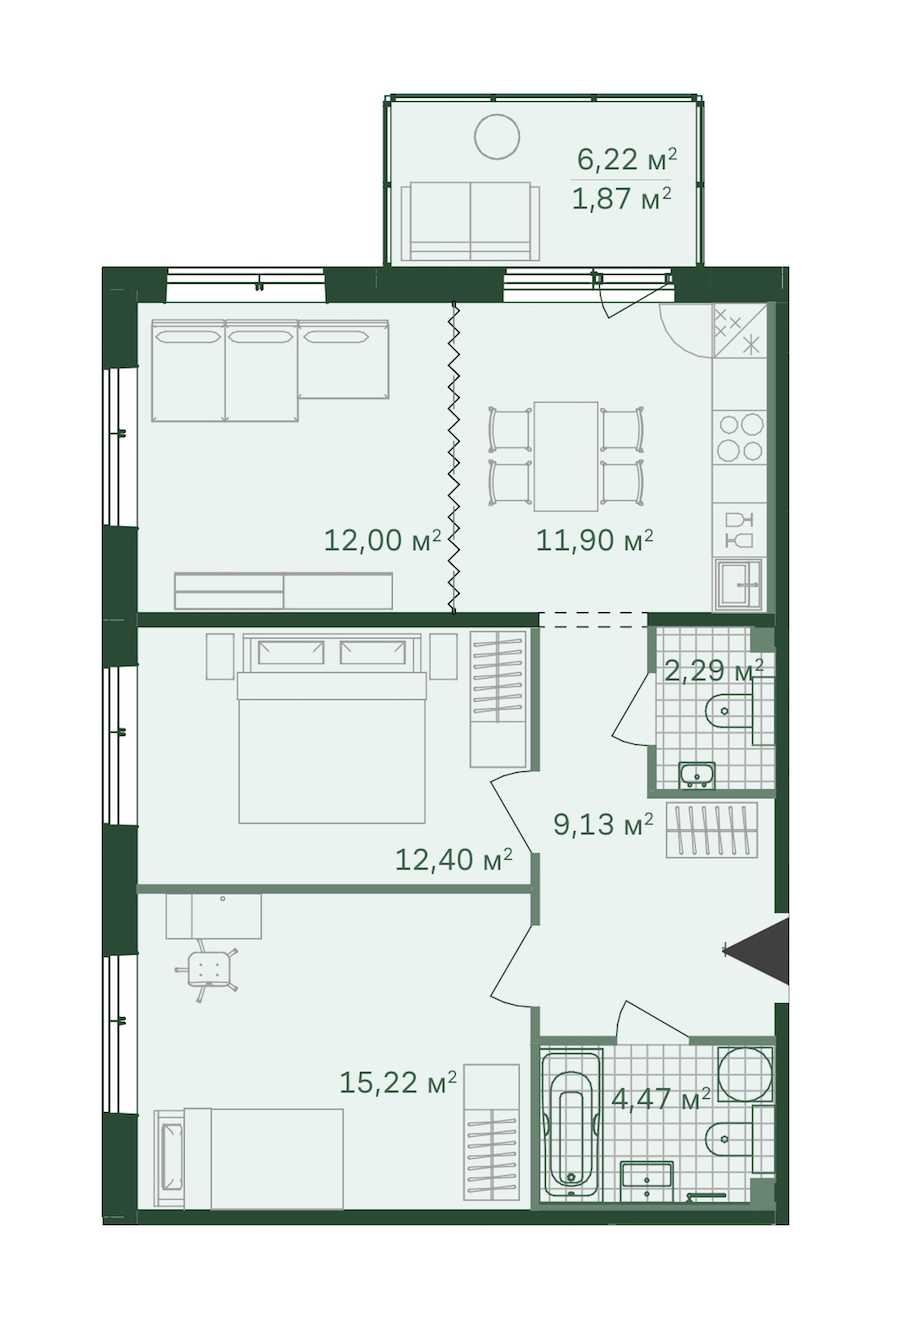 Трехкомнатная квартира в Bonava: площадь 69.28 м2 , этаж: 1 – купить в Санкт-Петербурге